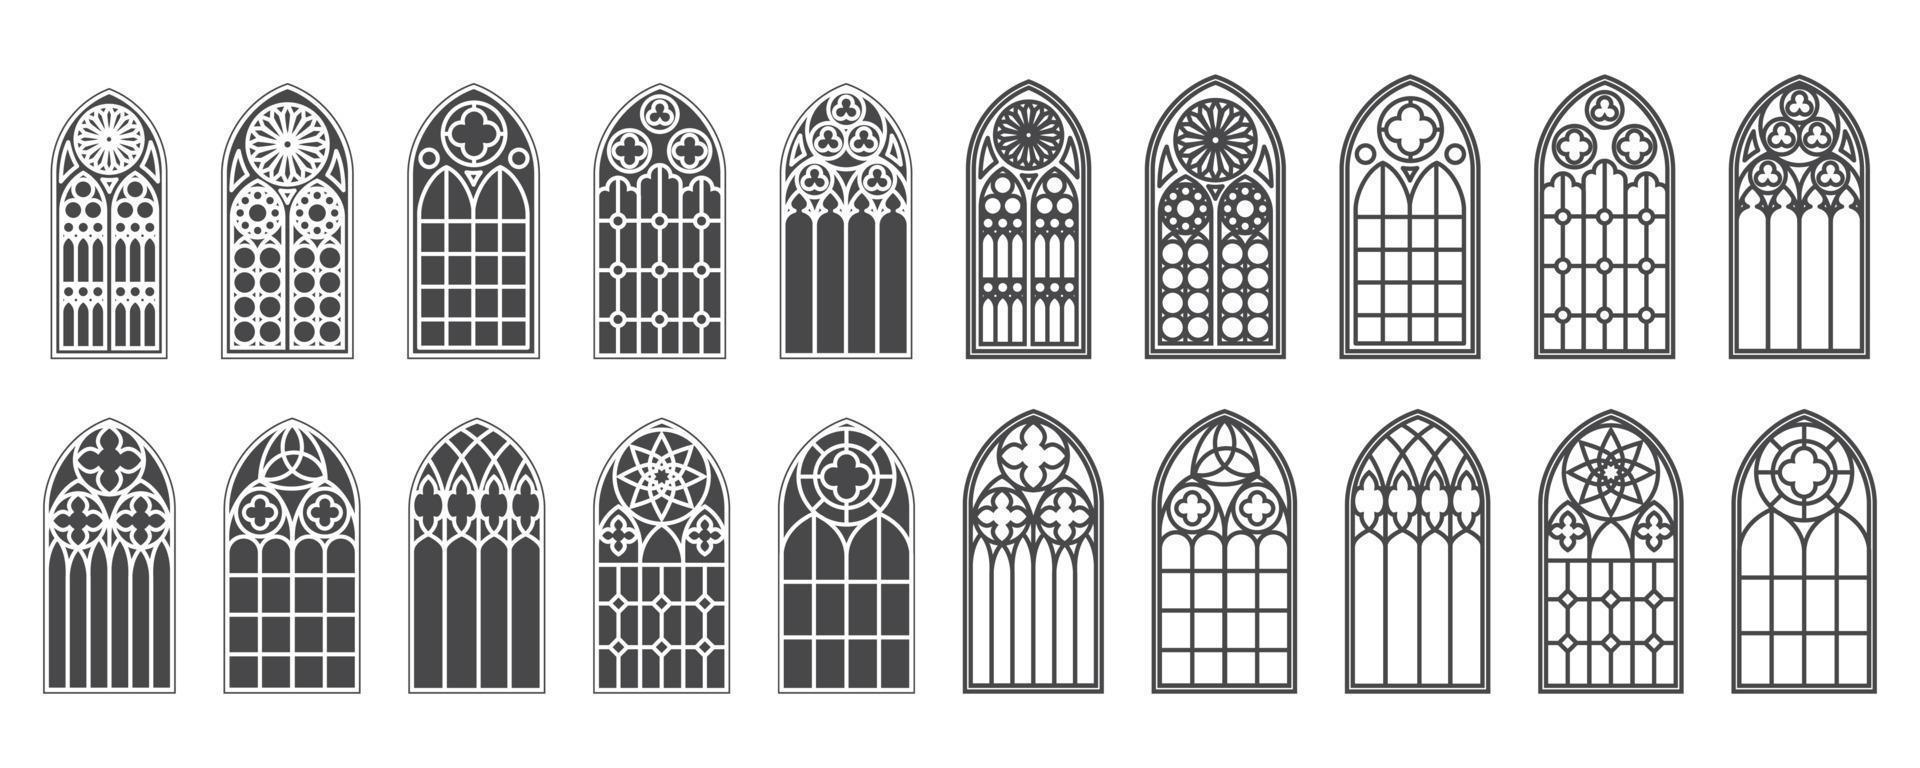 finestre della chiesa impostate. sagome di archi gotici in linea e stile classico glifo. cornici di vetro della vecchia cattedrale. elementi interni medievali. vettore